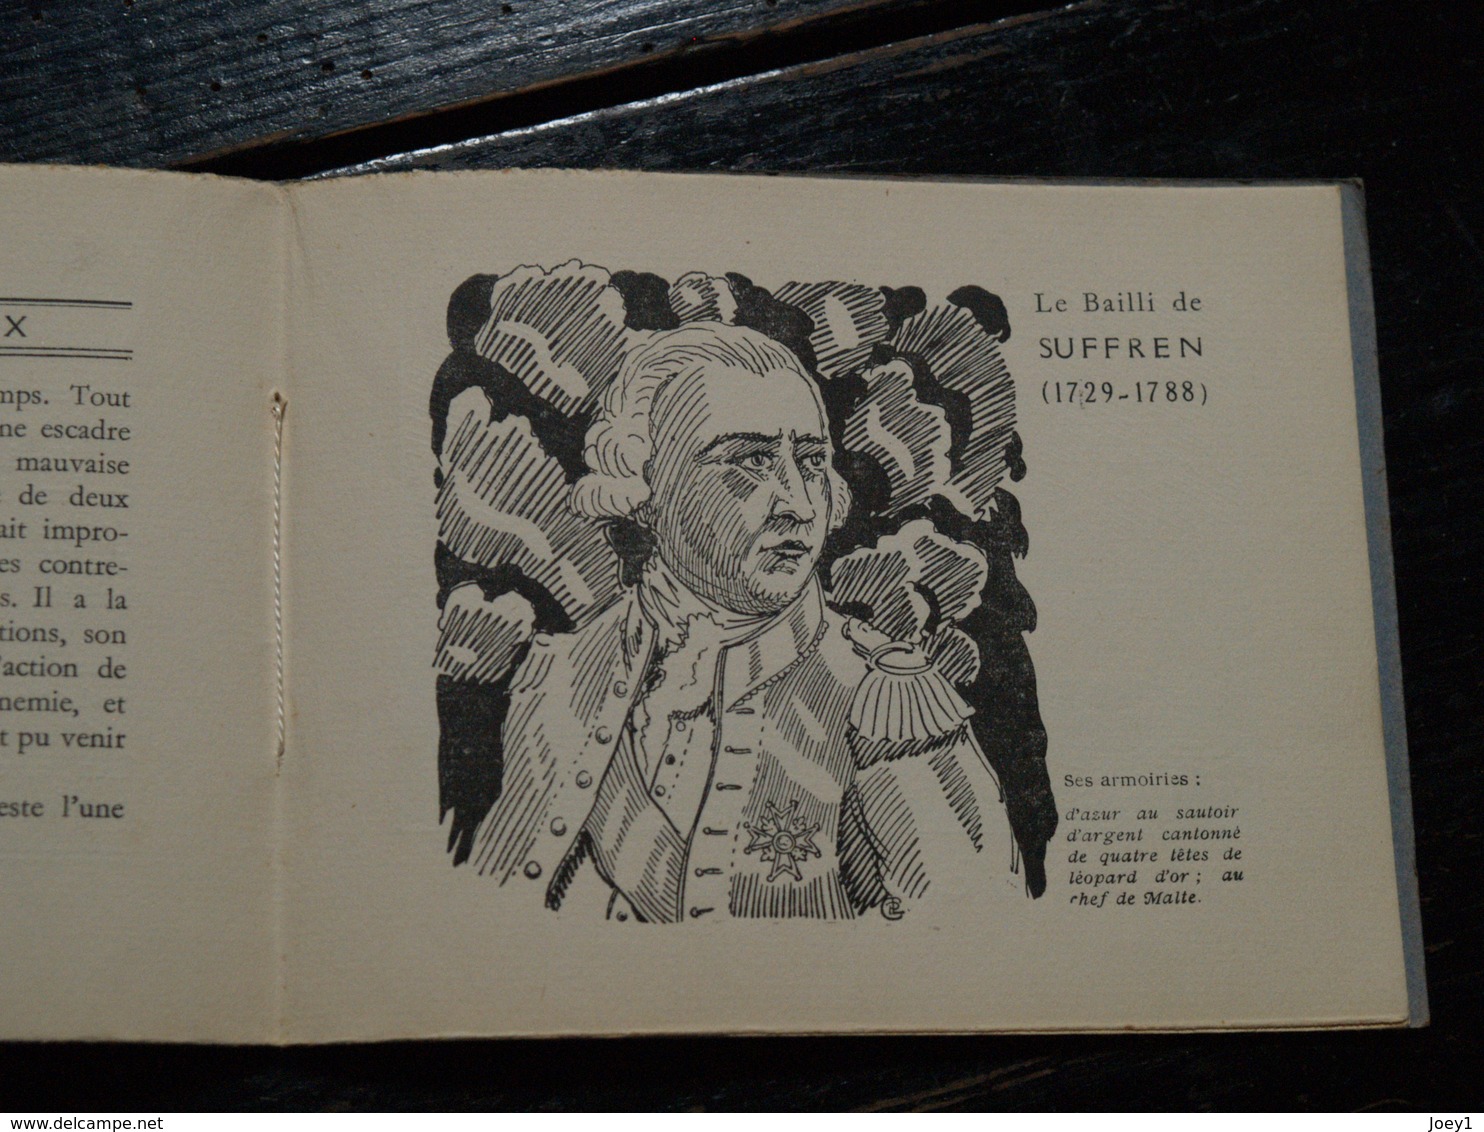 Livre revue dessin sur le croiseur Suffren.. édité par Pierre Le Conte en 1929